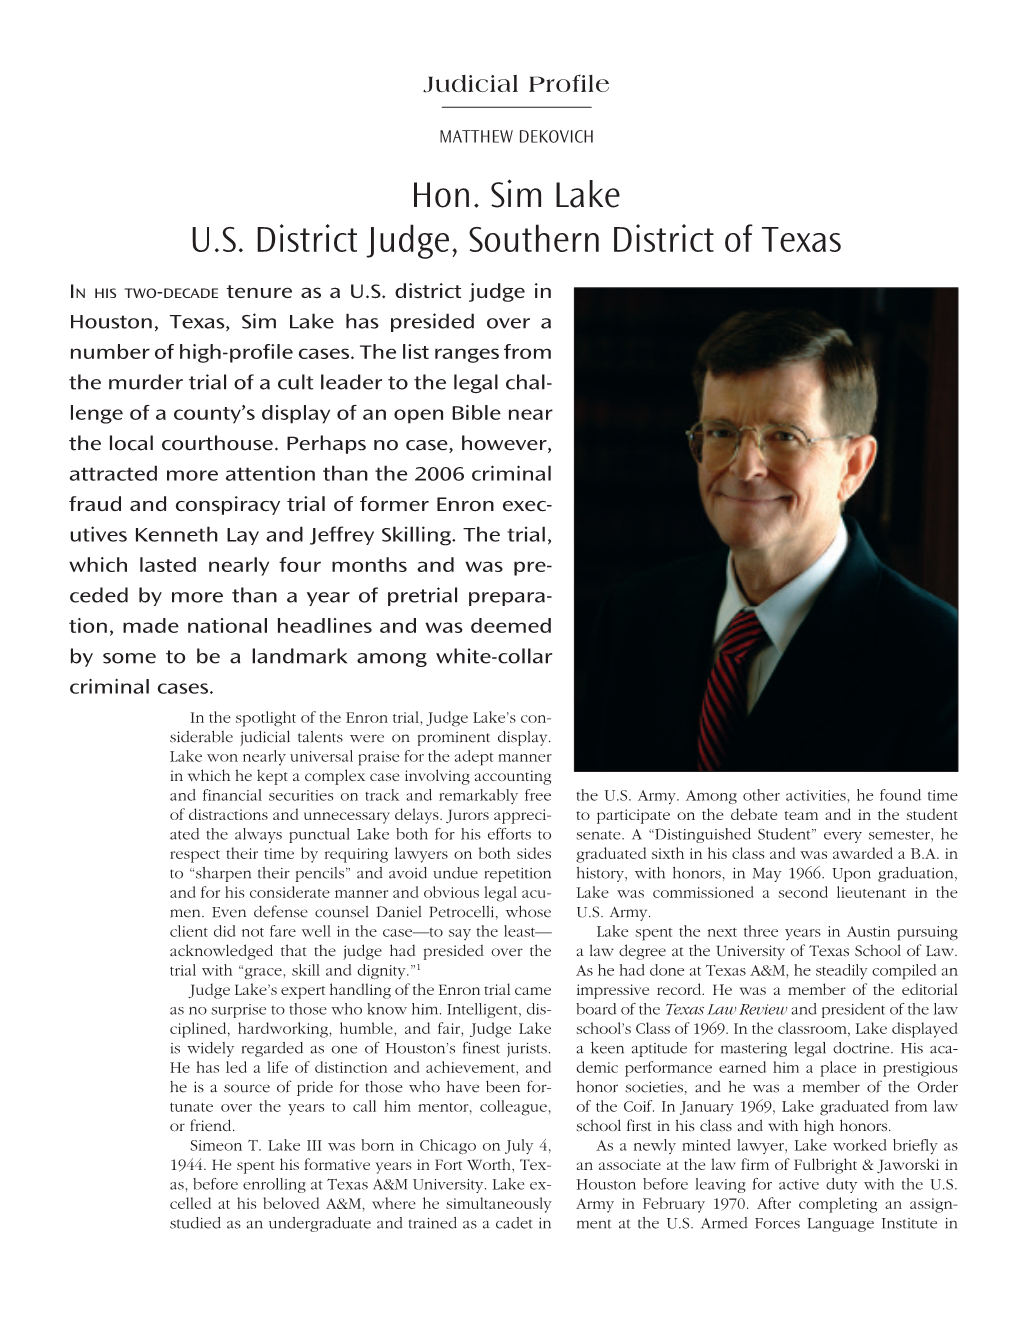 Hon. Sim Lake U.S. District Judge, Southern District of Texas